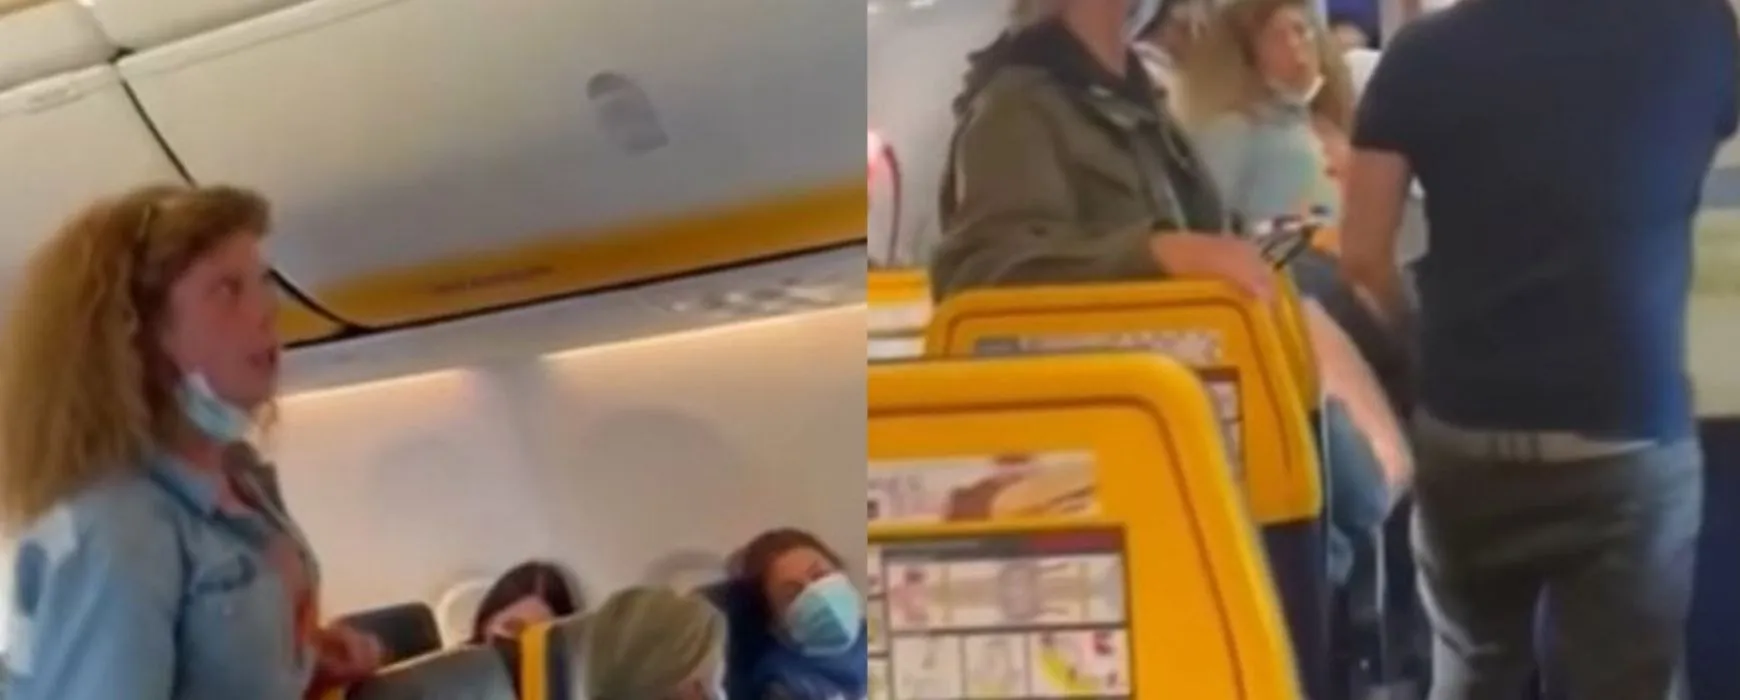 Υστερία: της ζήτησαν να φορέσει μάσκα στο αεροπλάνο – Κλωτσούσε, ούρλιαζε και έφτυνε (βίντεο)